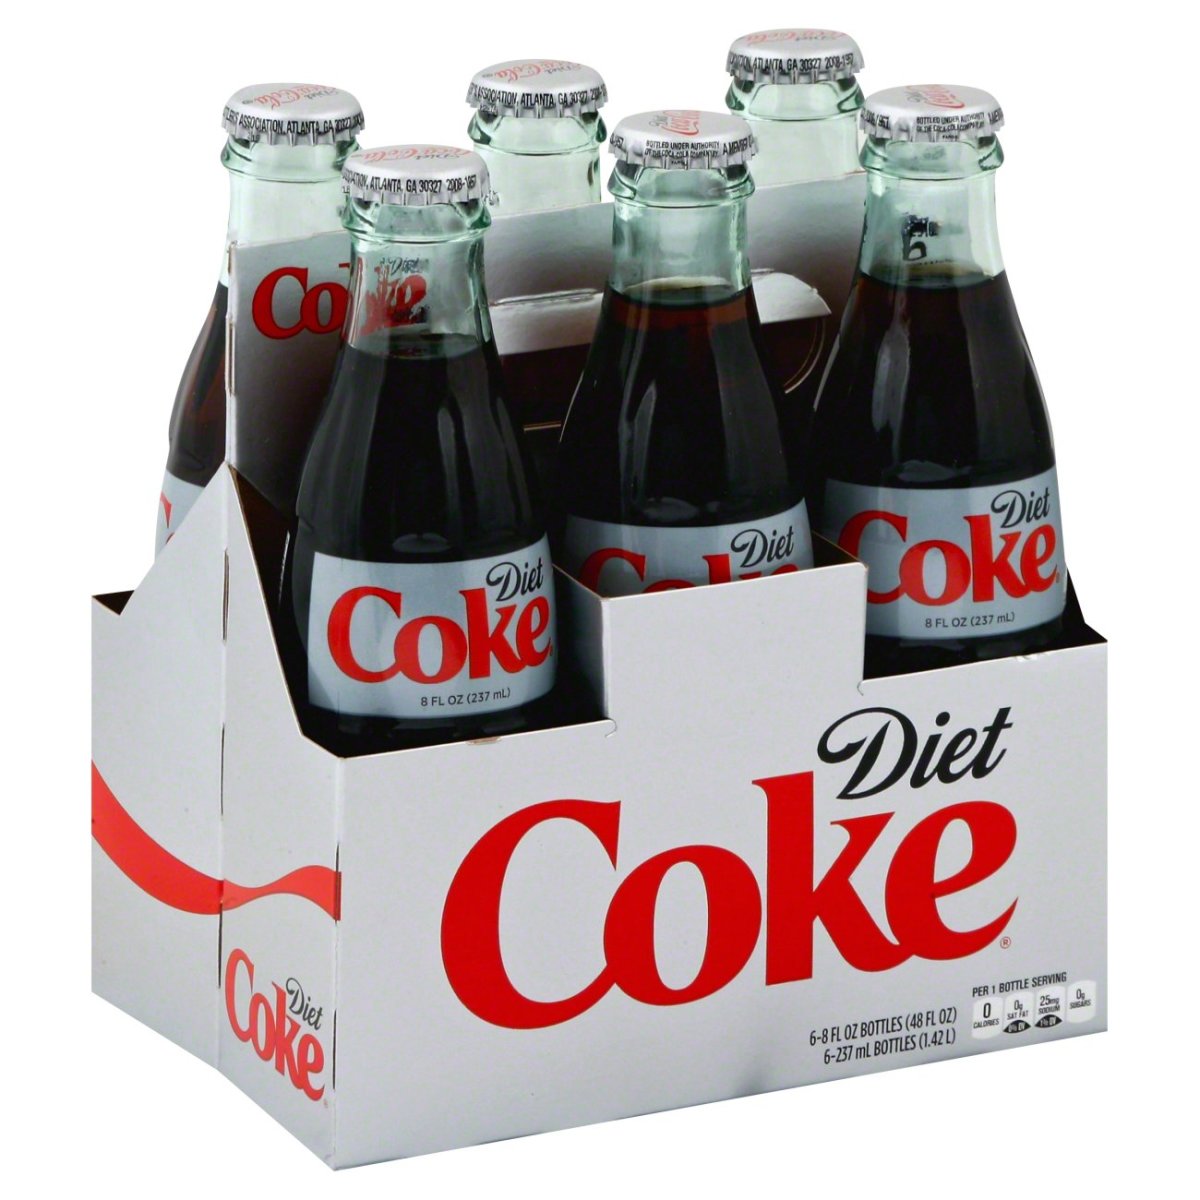 In 1984, Diet Coke was a popular soft drink.